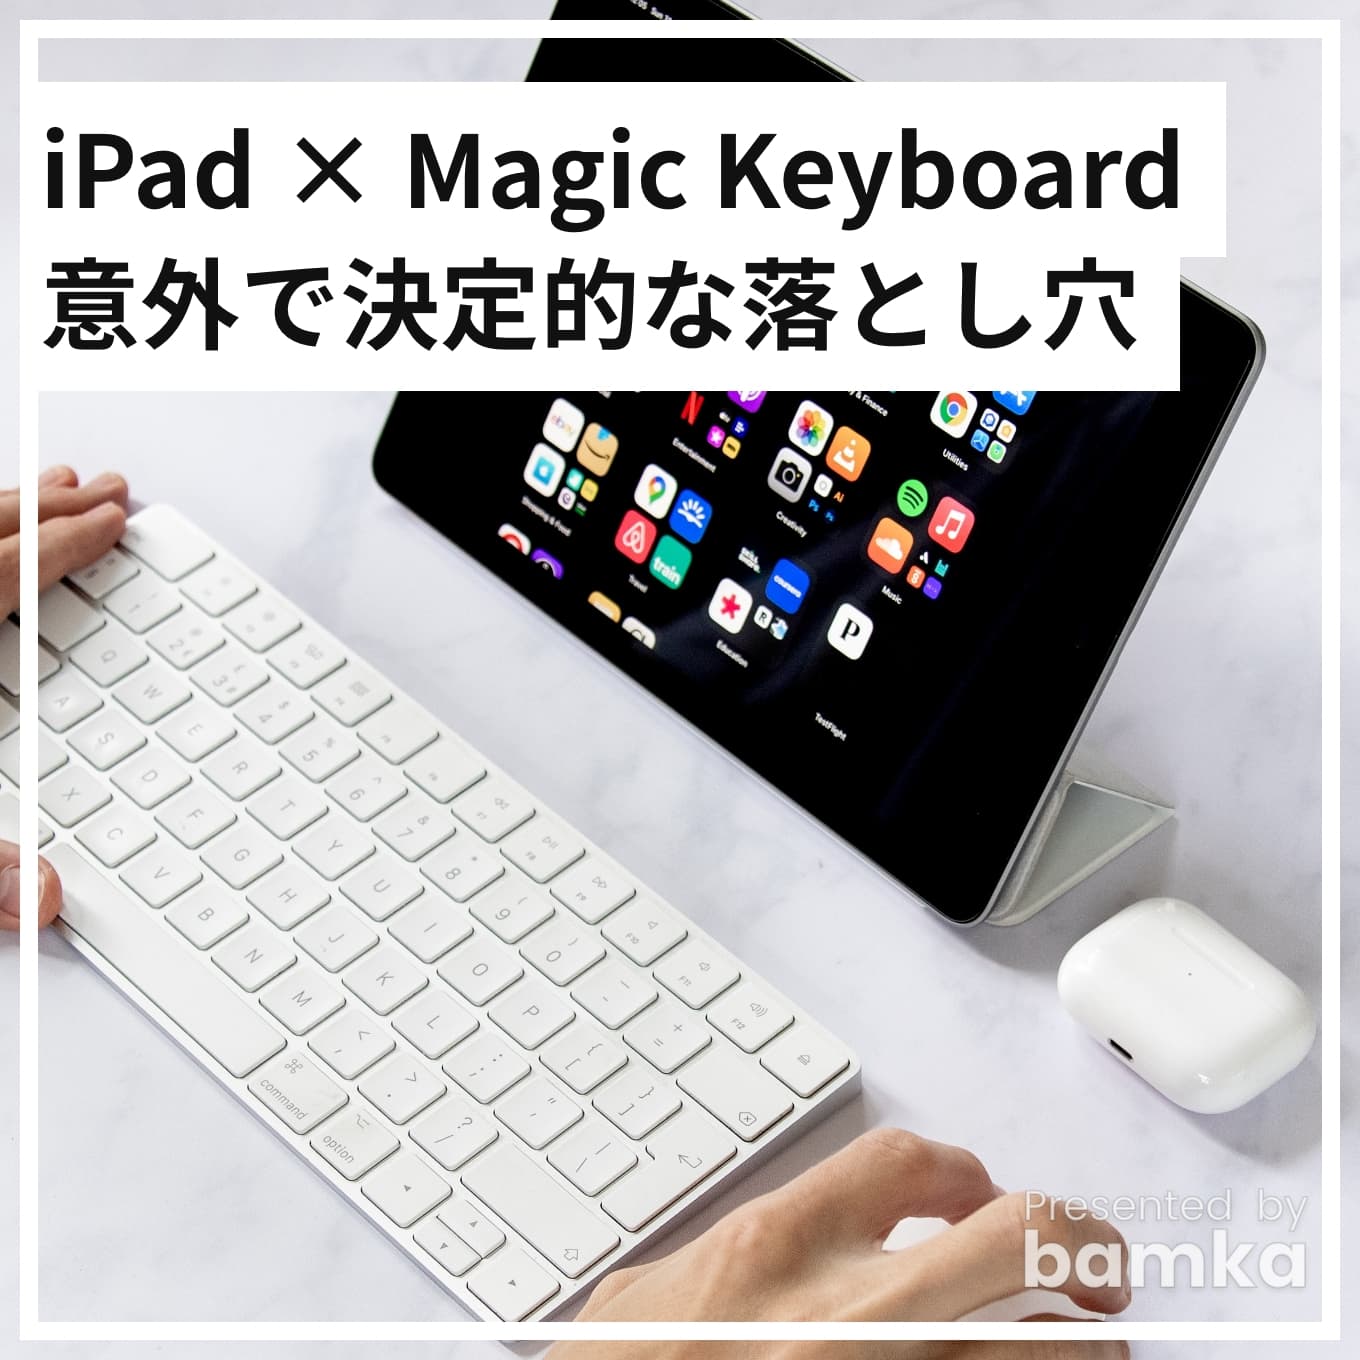 magickeyboard-multi-device-ng